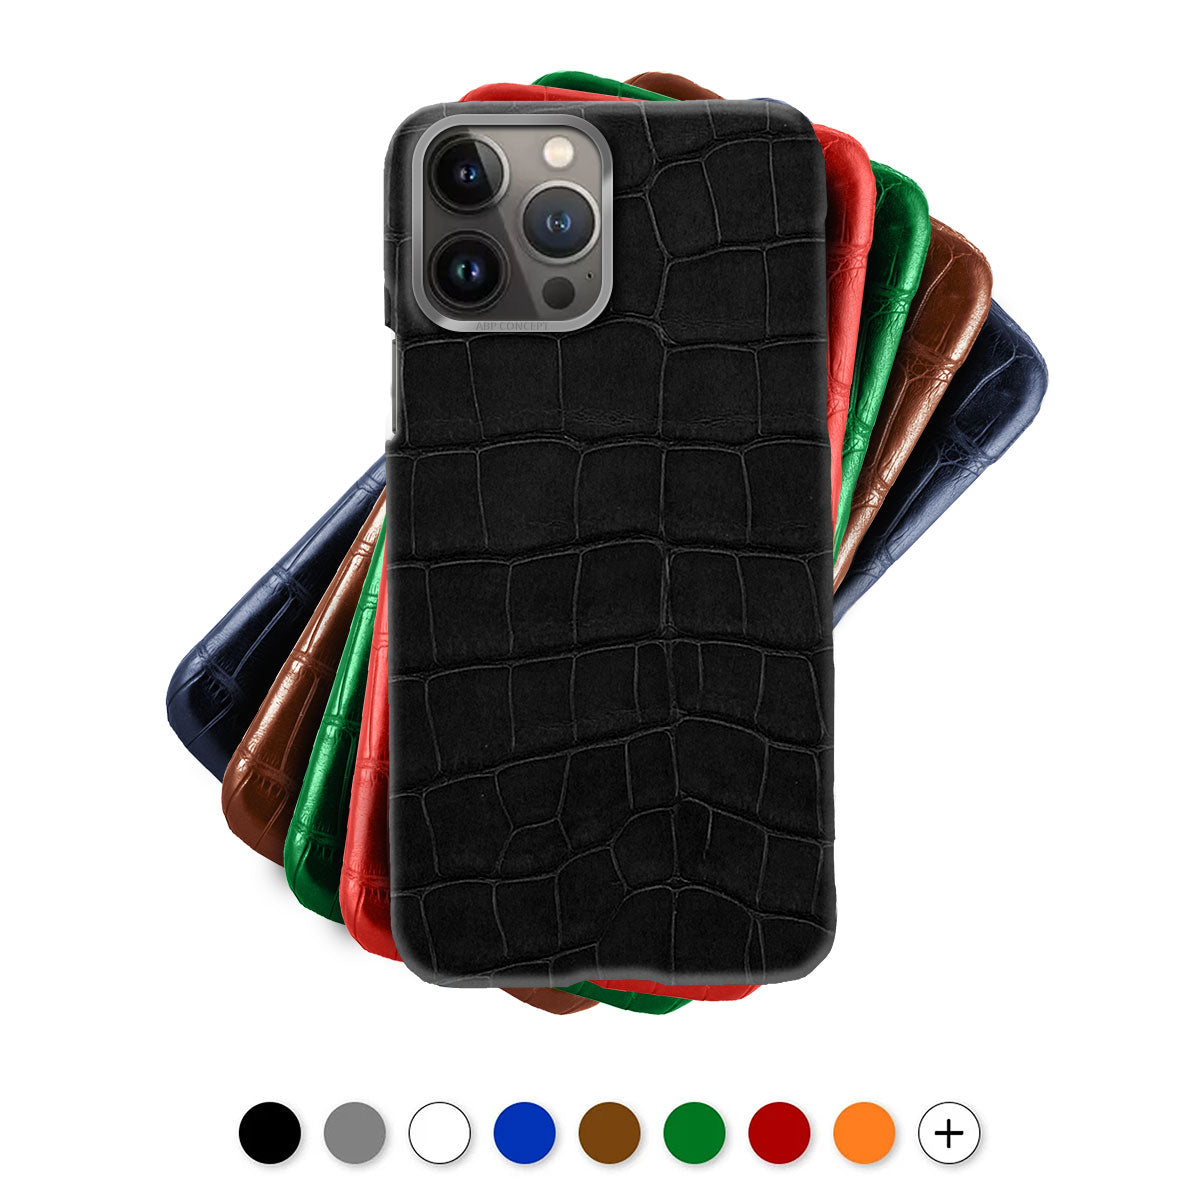 Leather iPhone case / cover - iPhone 13 ( Pro / Max / Mini ) - Genuine alligator